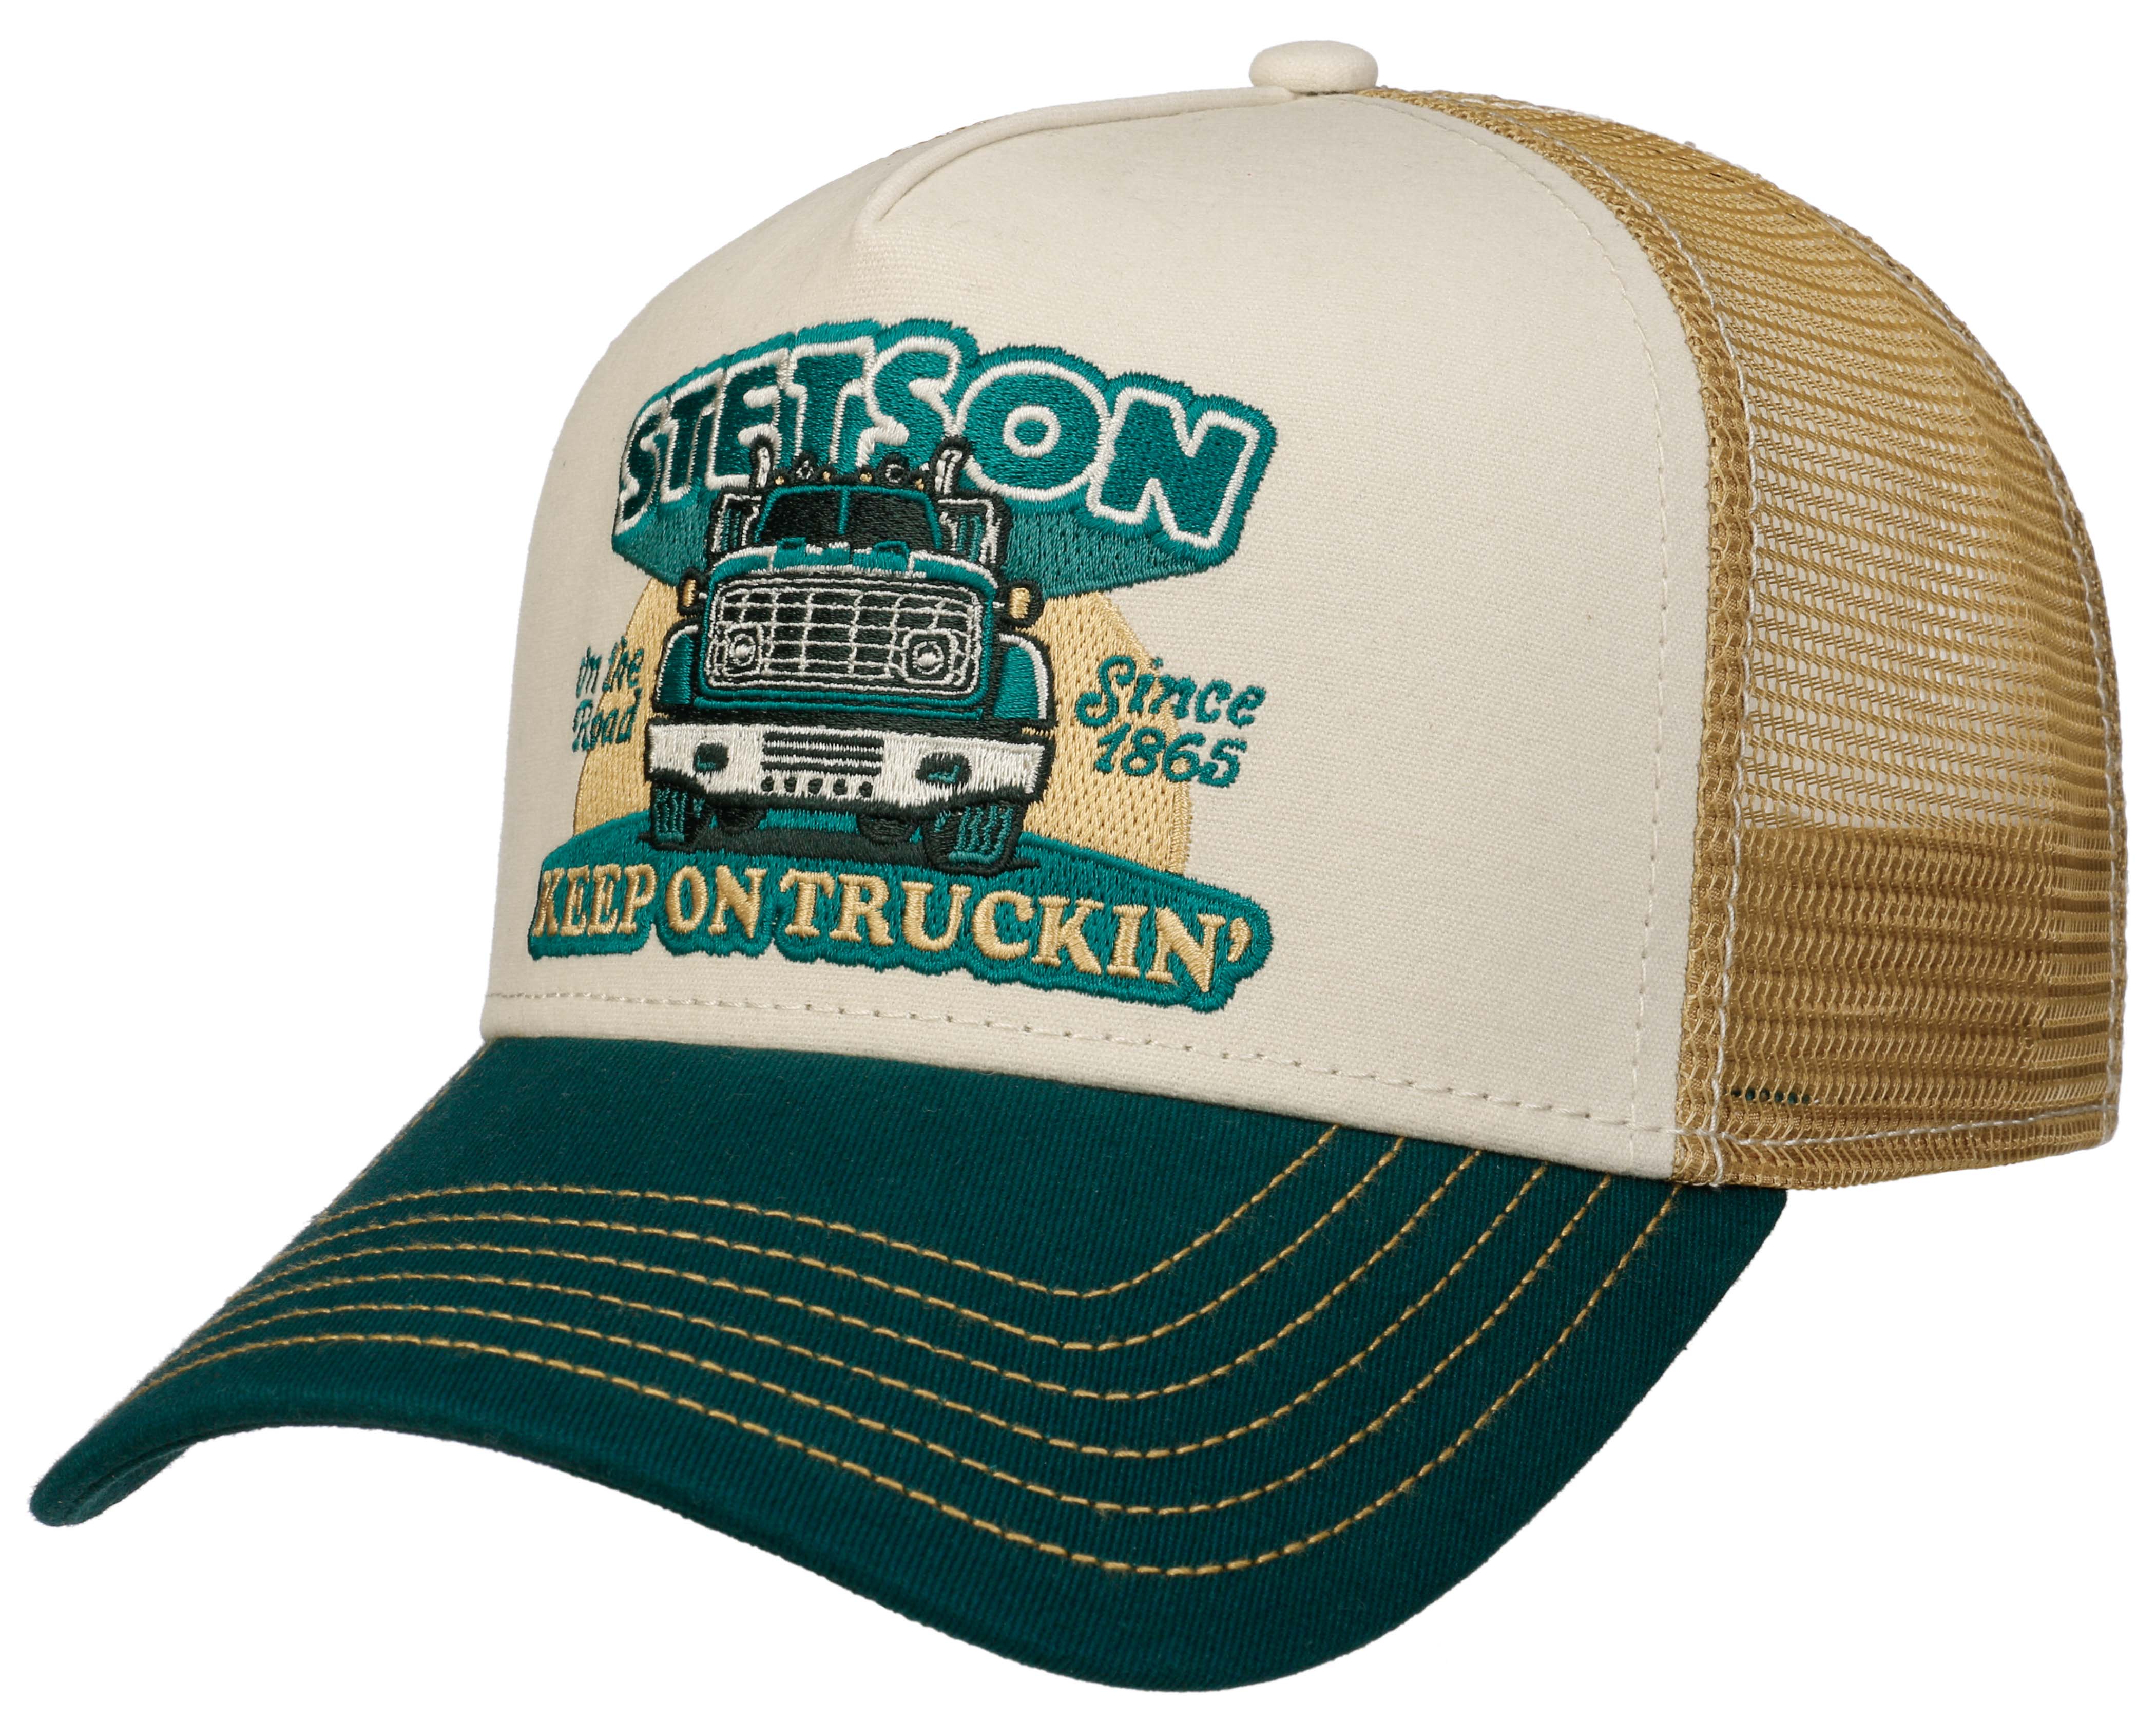 Stetson Men's Trucker Cap Keep On Trucking Green/Sand